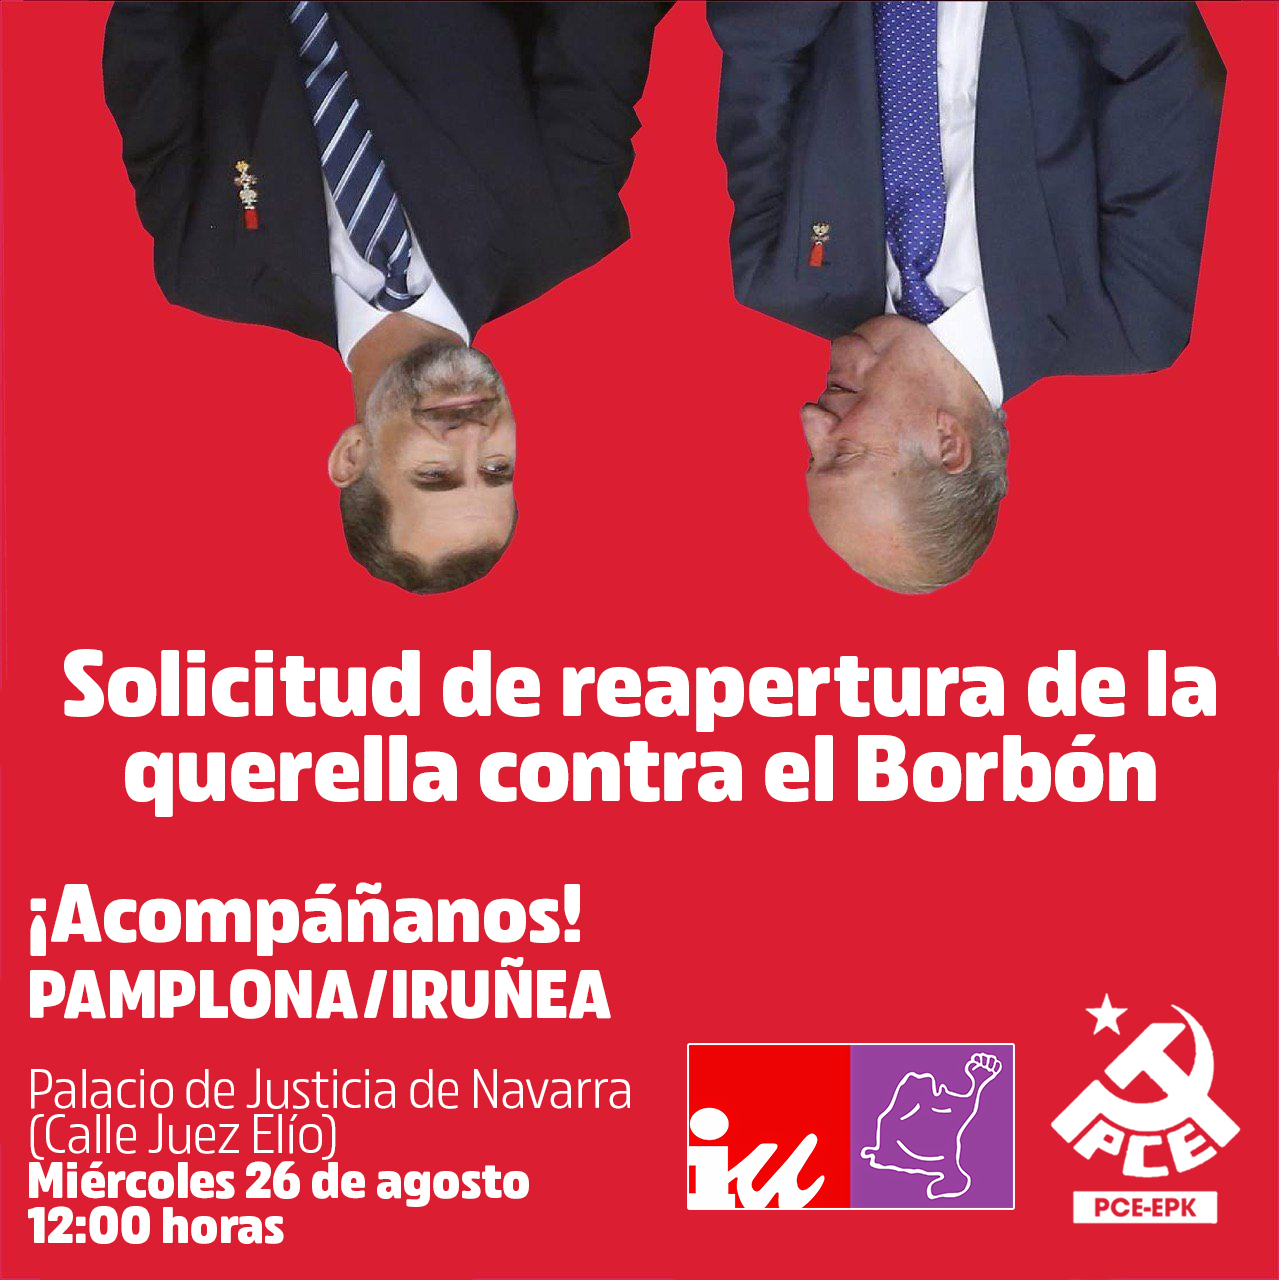 El PCE-EPK junto con IUN-NEB registrará una solicitud de reapertura de la Querella al Borbón en el Palacio de Justicia de Navarra.